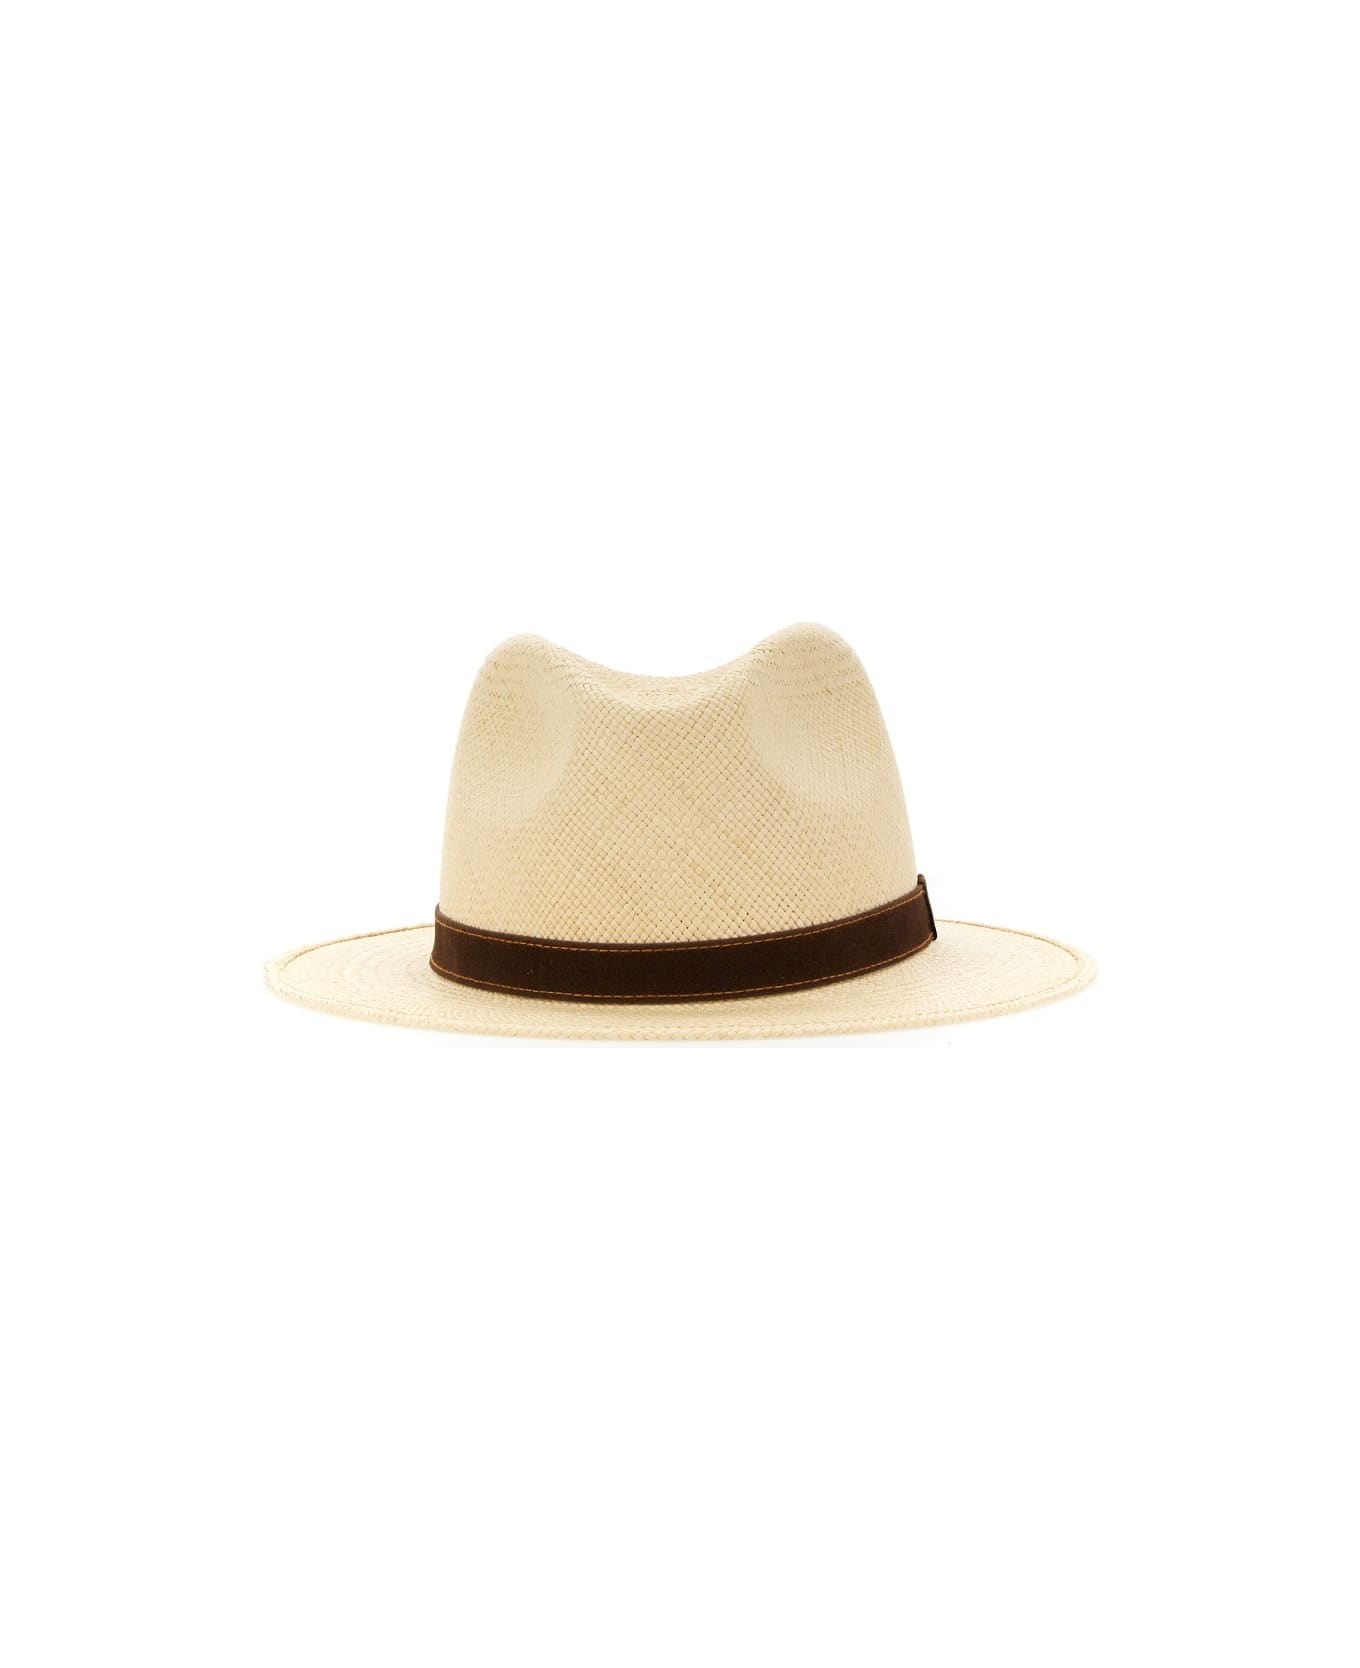 Borsalino Country Panama Quito Hat - Beige 帽子